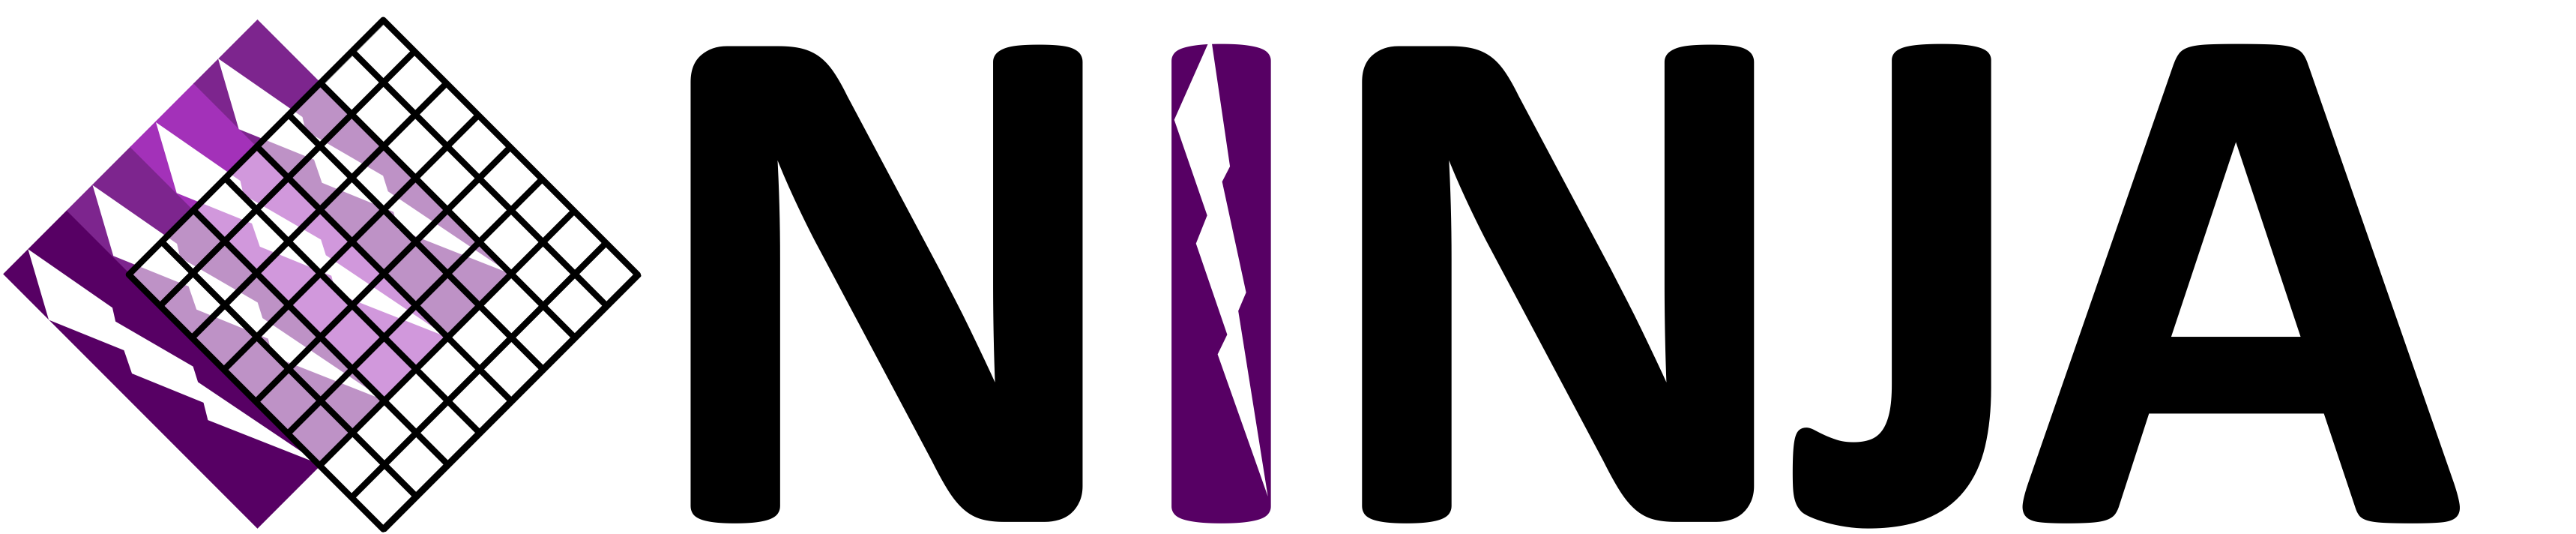 NINJA_logo.png